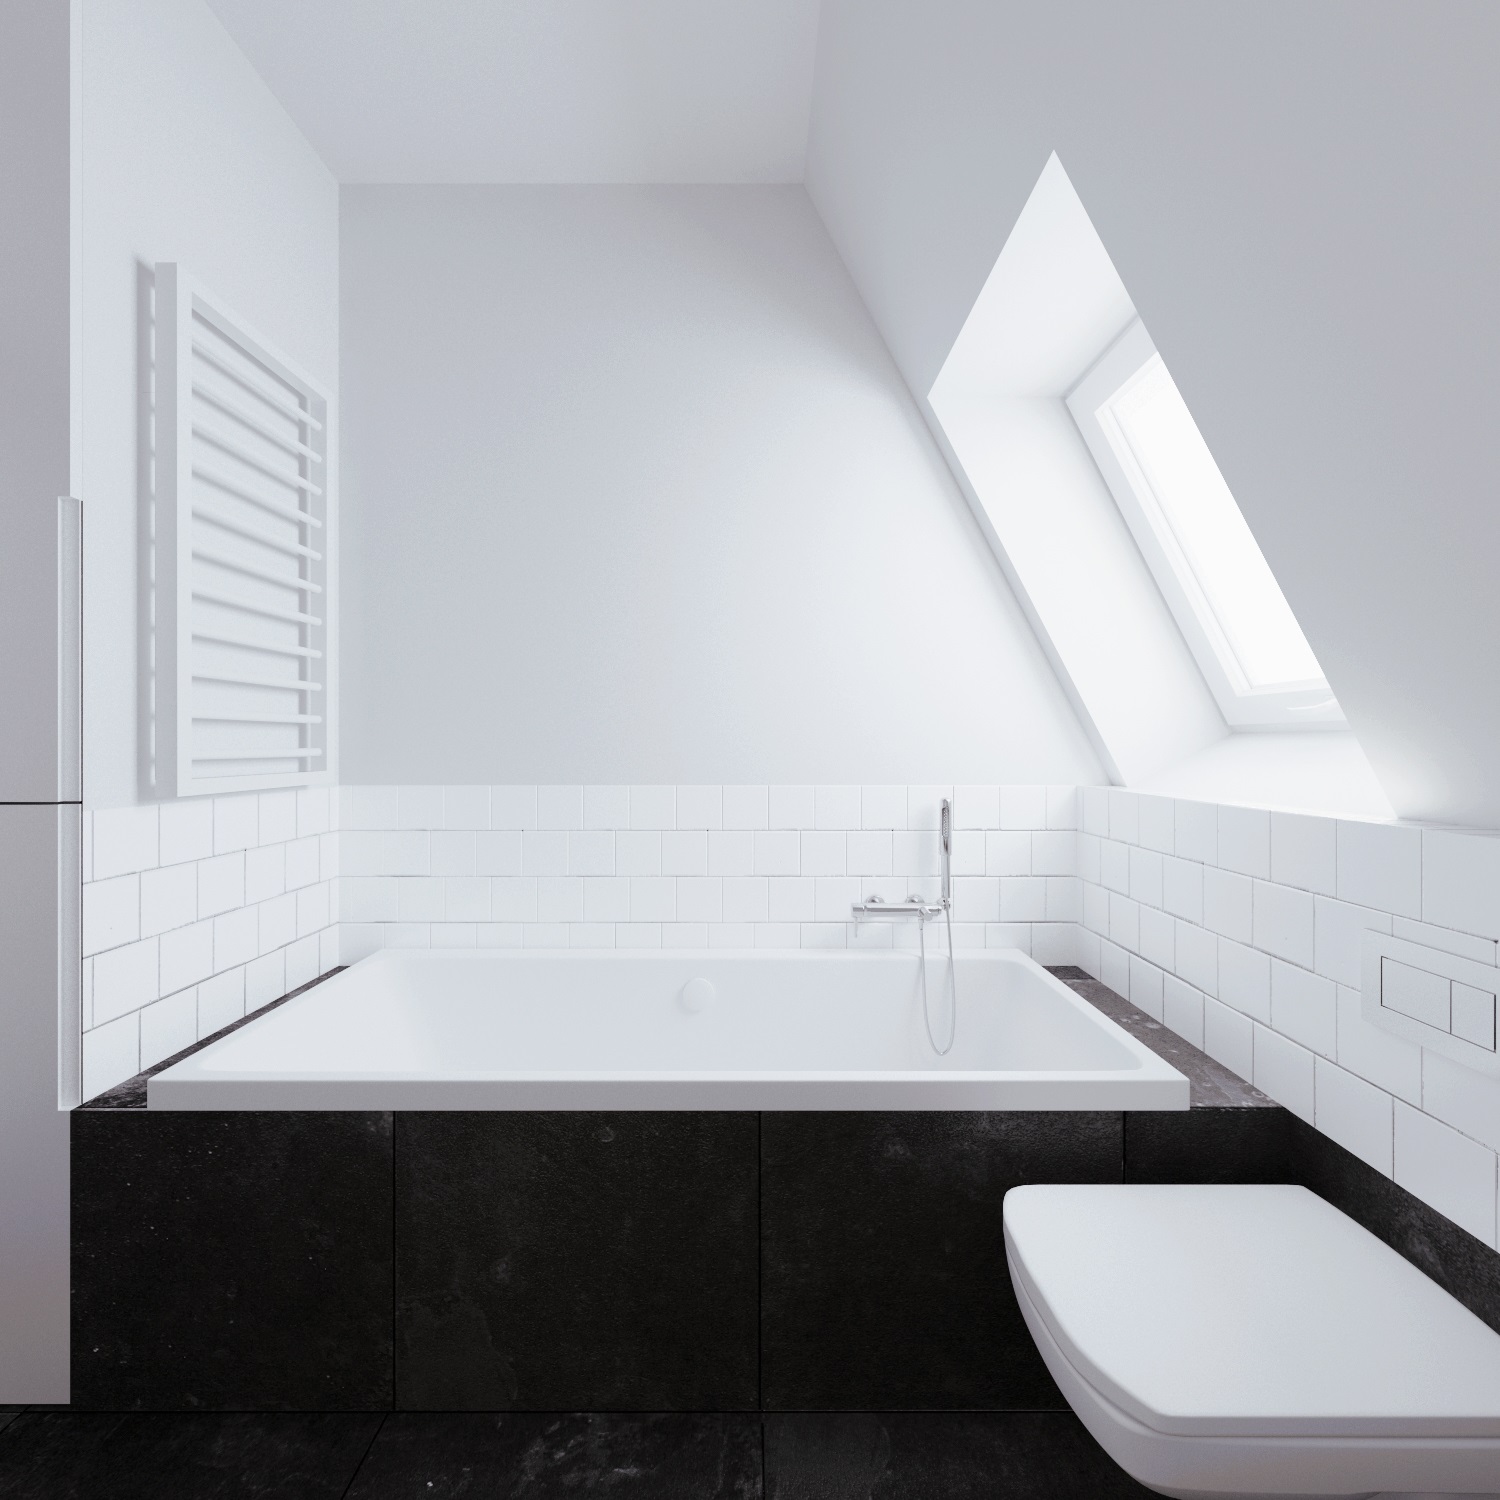 Wedo thiết kế nội thất phòng tắm thông minh cho căn hộ nhỏ tầng áp mái